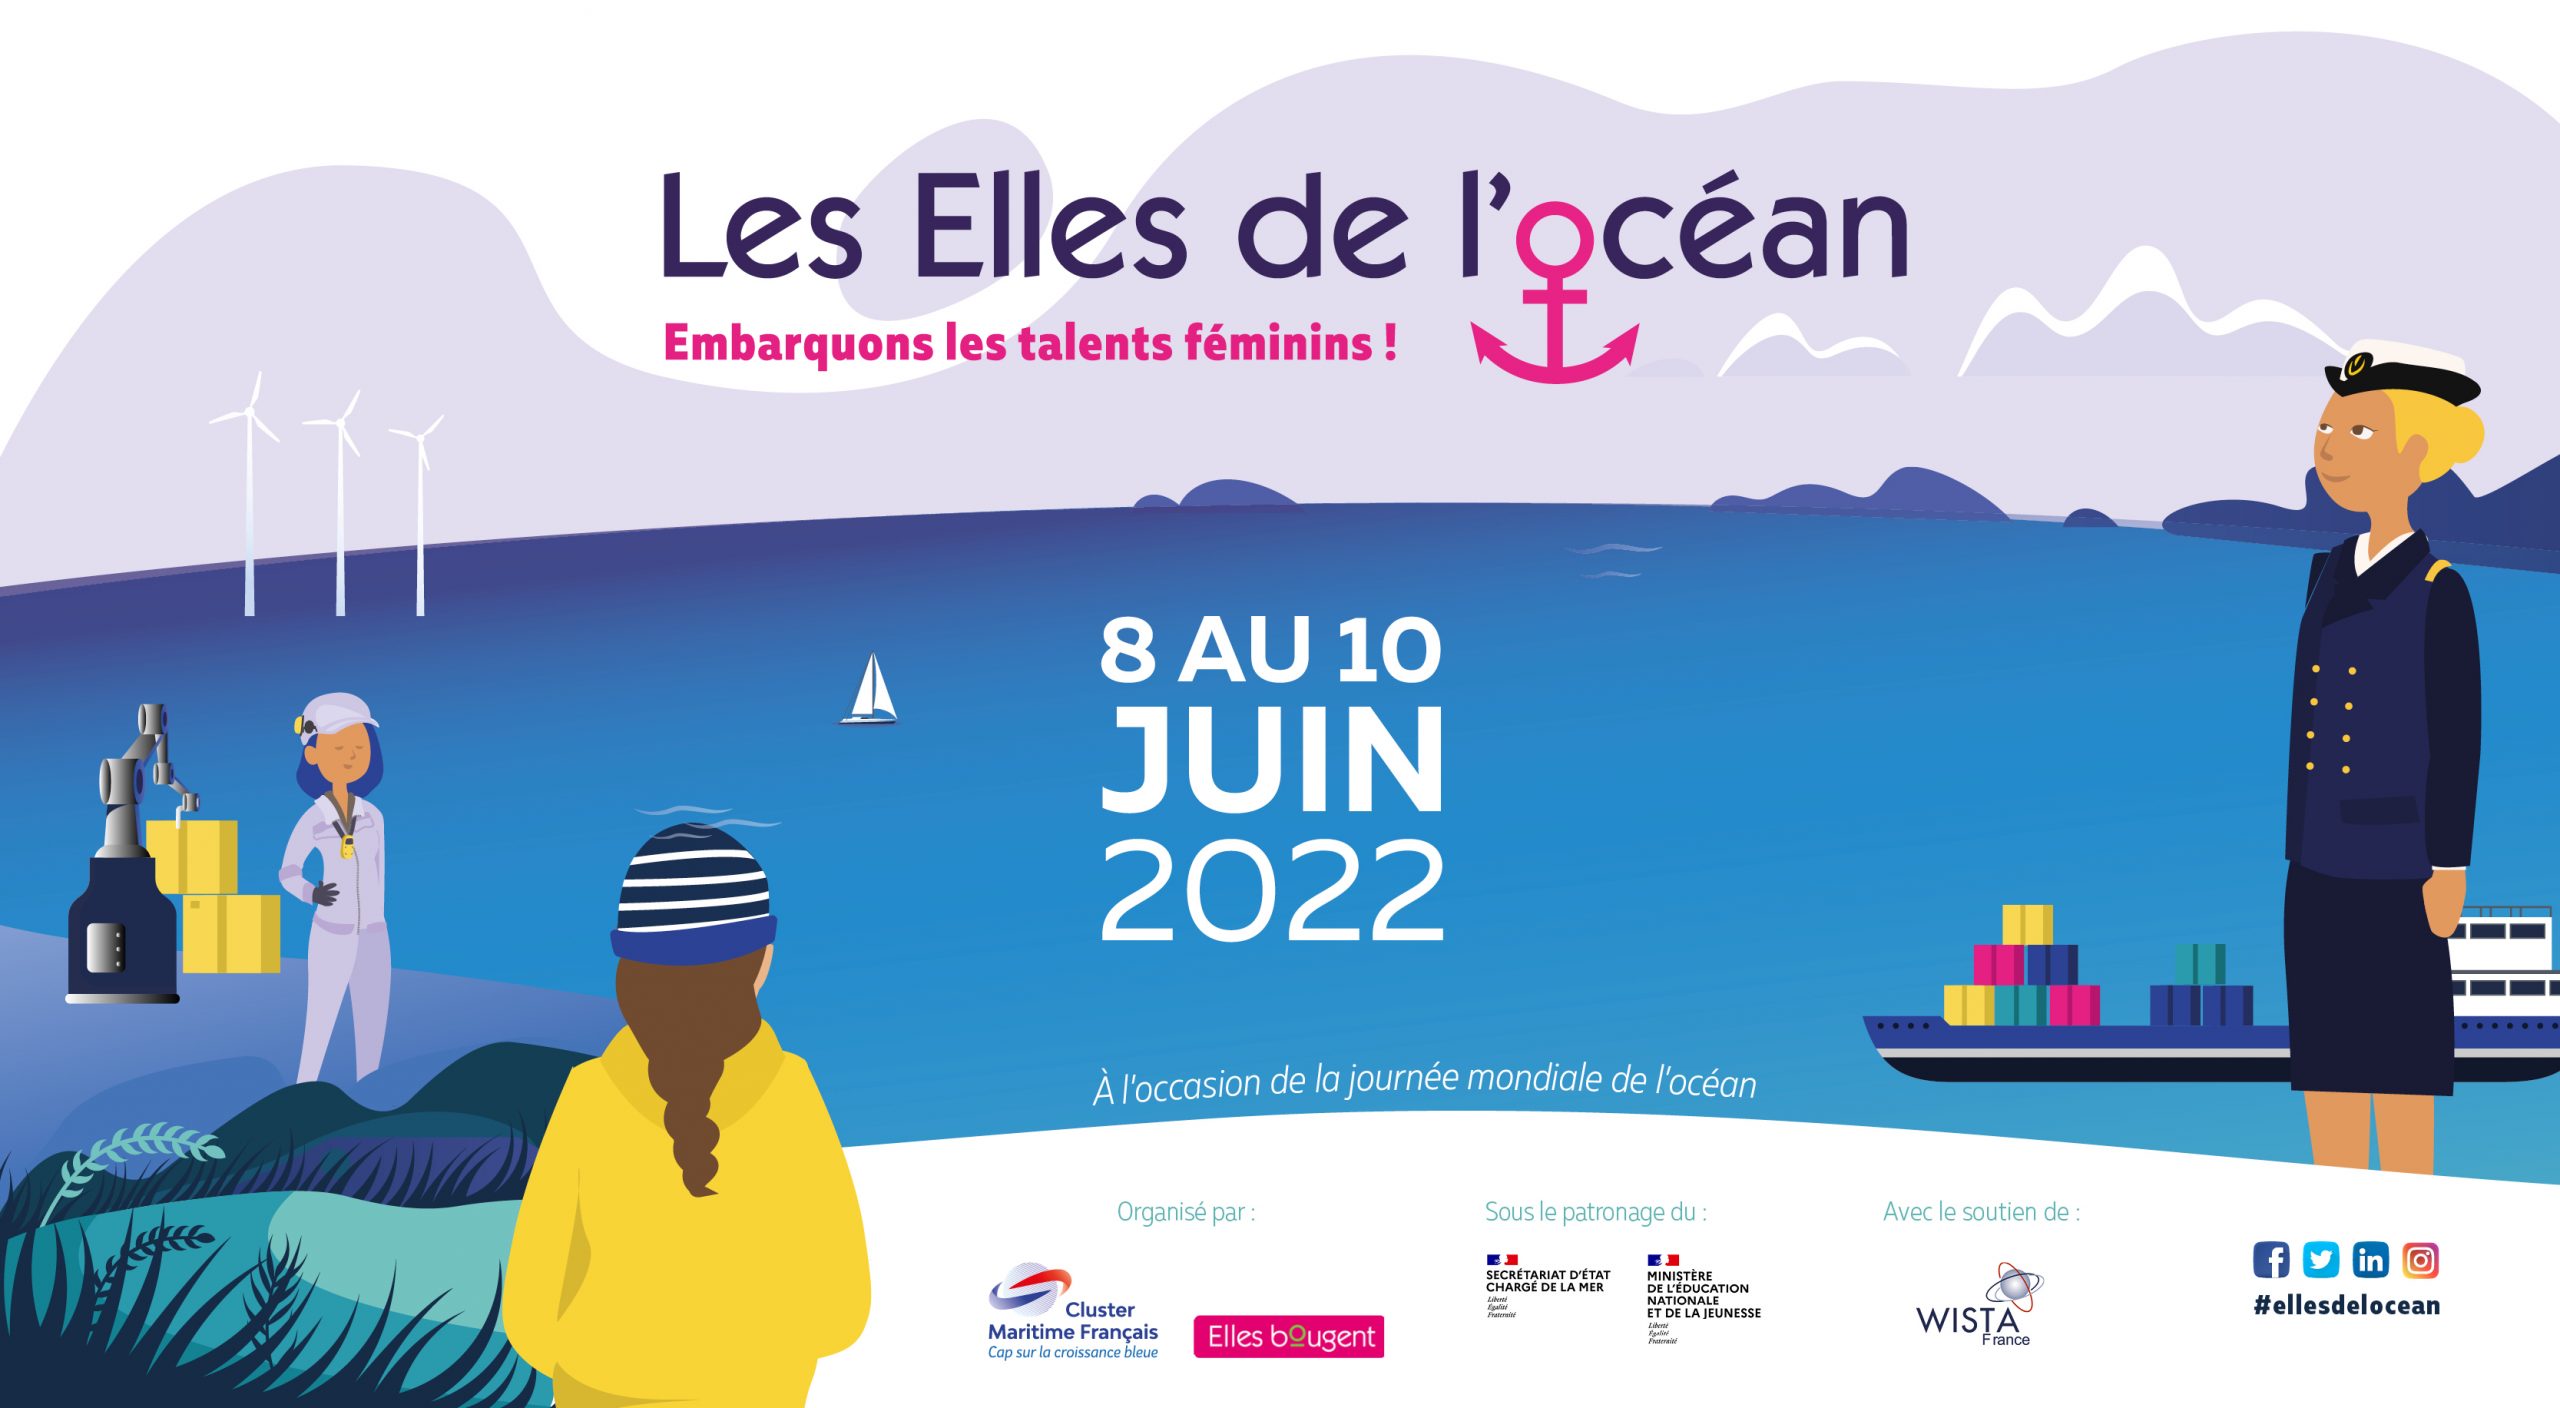 Lancement de la 4e édition des « ELLES DE L’OCÉAN » par Elles bougent et le Cluster Maritime Français